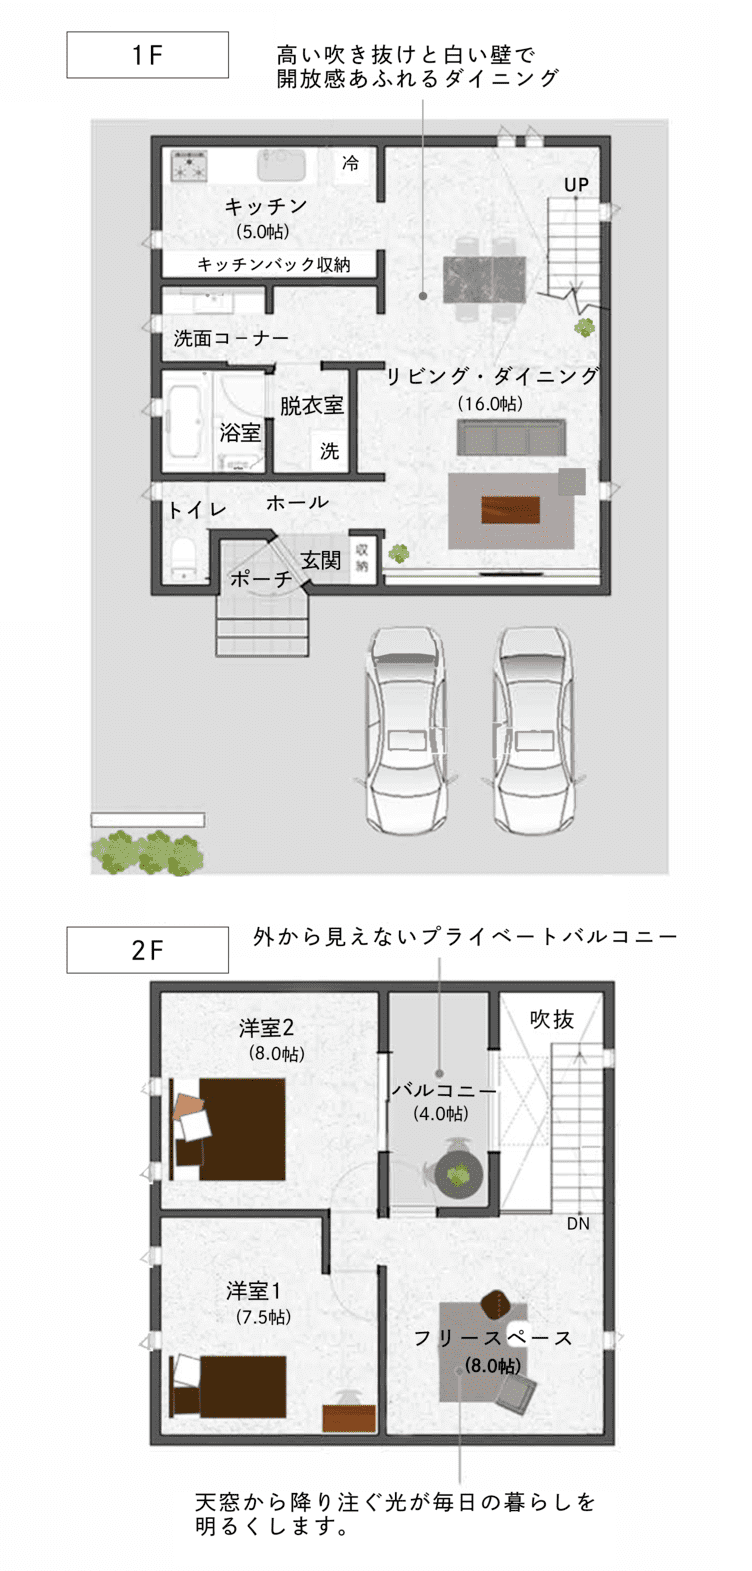 casa cube 間取り1F【casa cube】-大阪・堺の工務店ラックハウジング